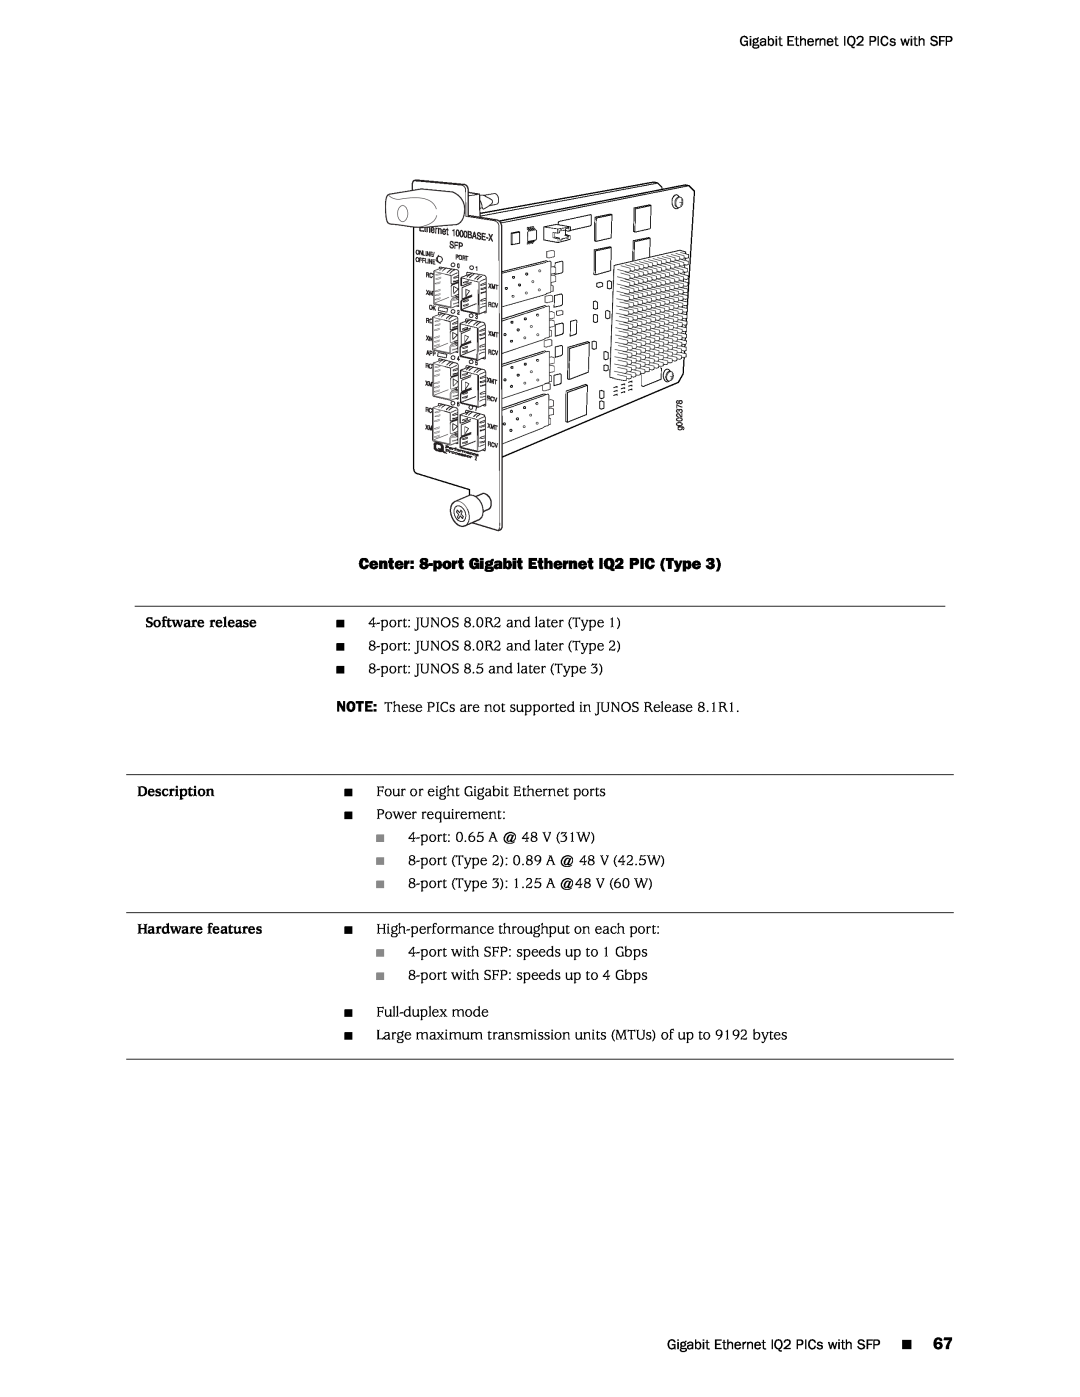 Juniper Networks M120 manual Center 8-port Gigabit Ethernet IQ2 PIC Type, g002378 